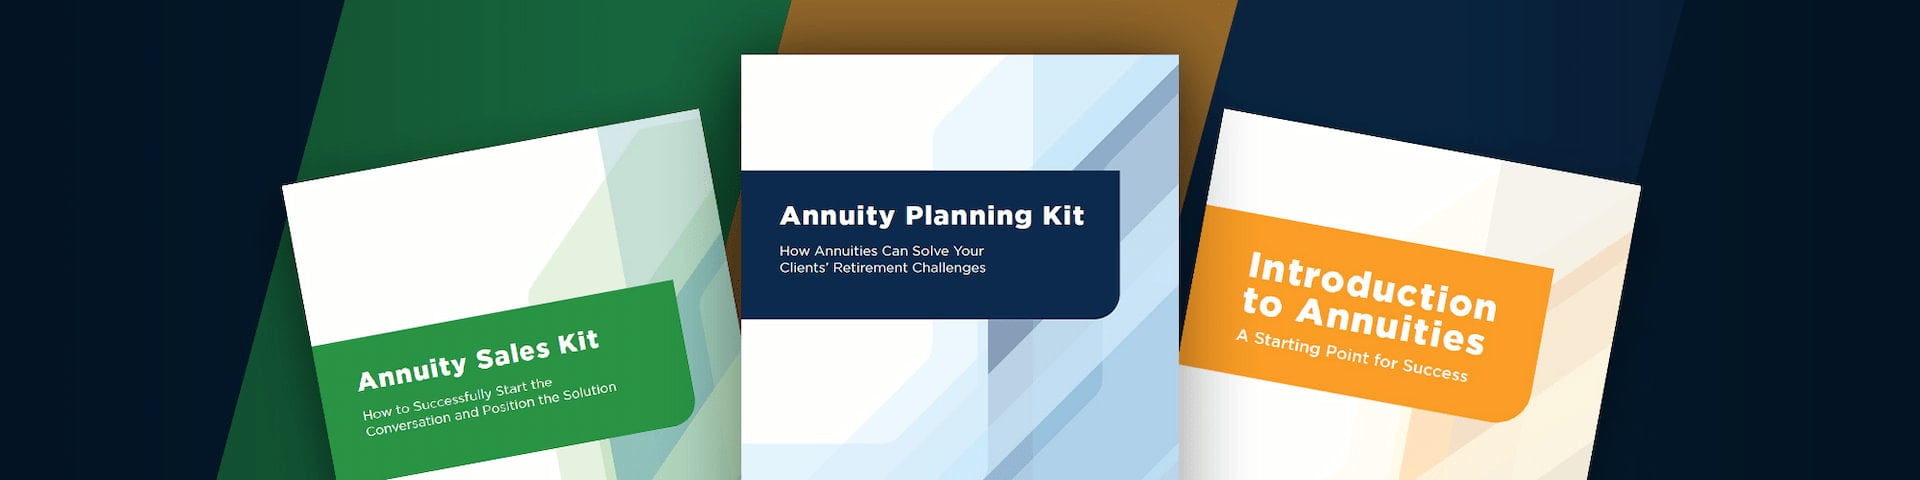 Annuity Planning Kit